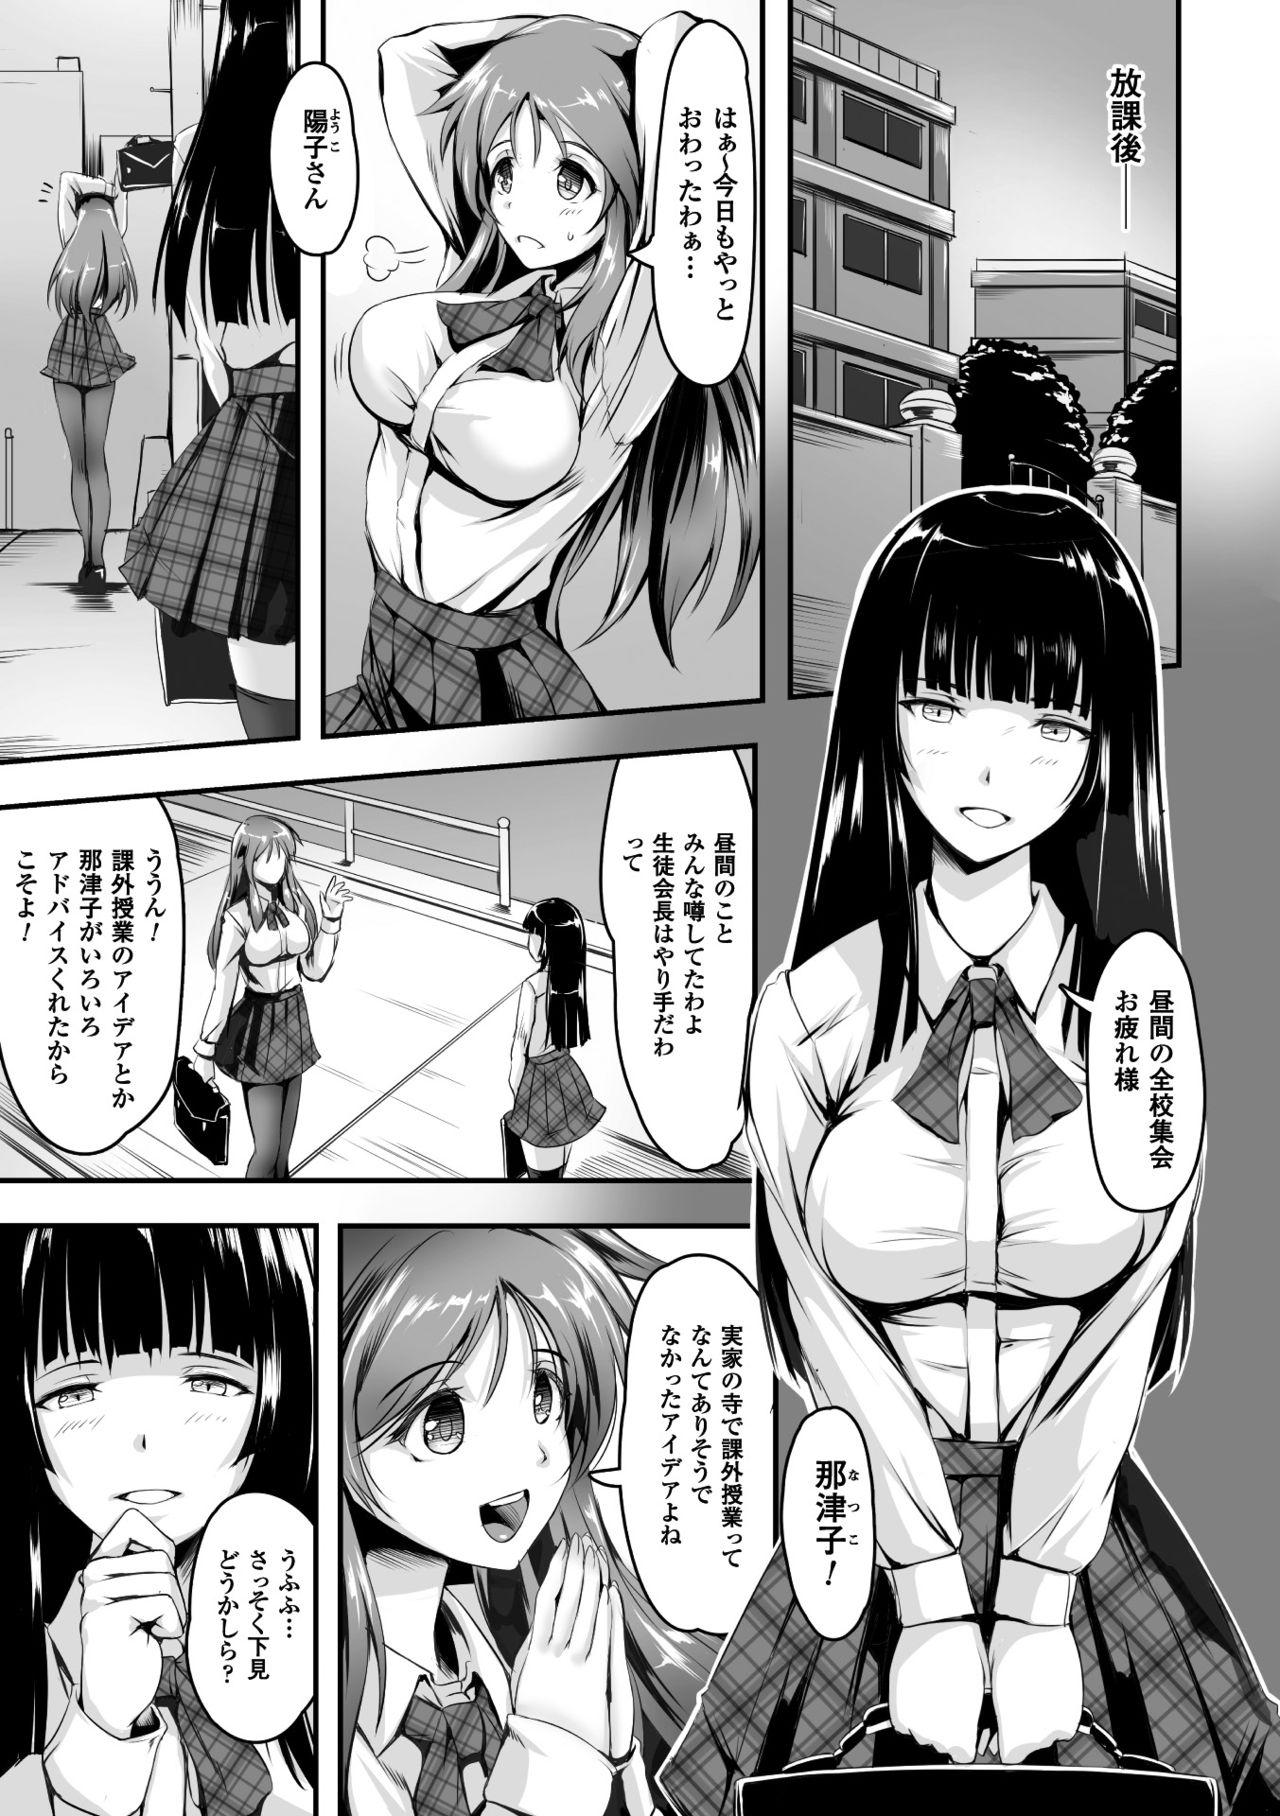 Safada 2D Comic Magazine Shokushu Les Vol. 2 Tats - Page 6